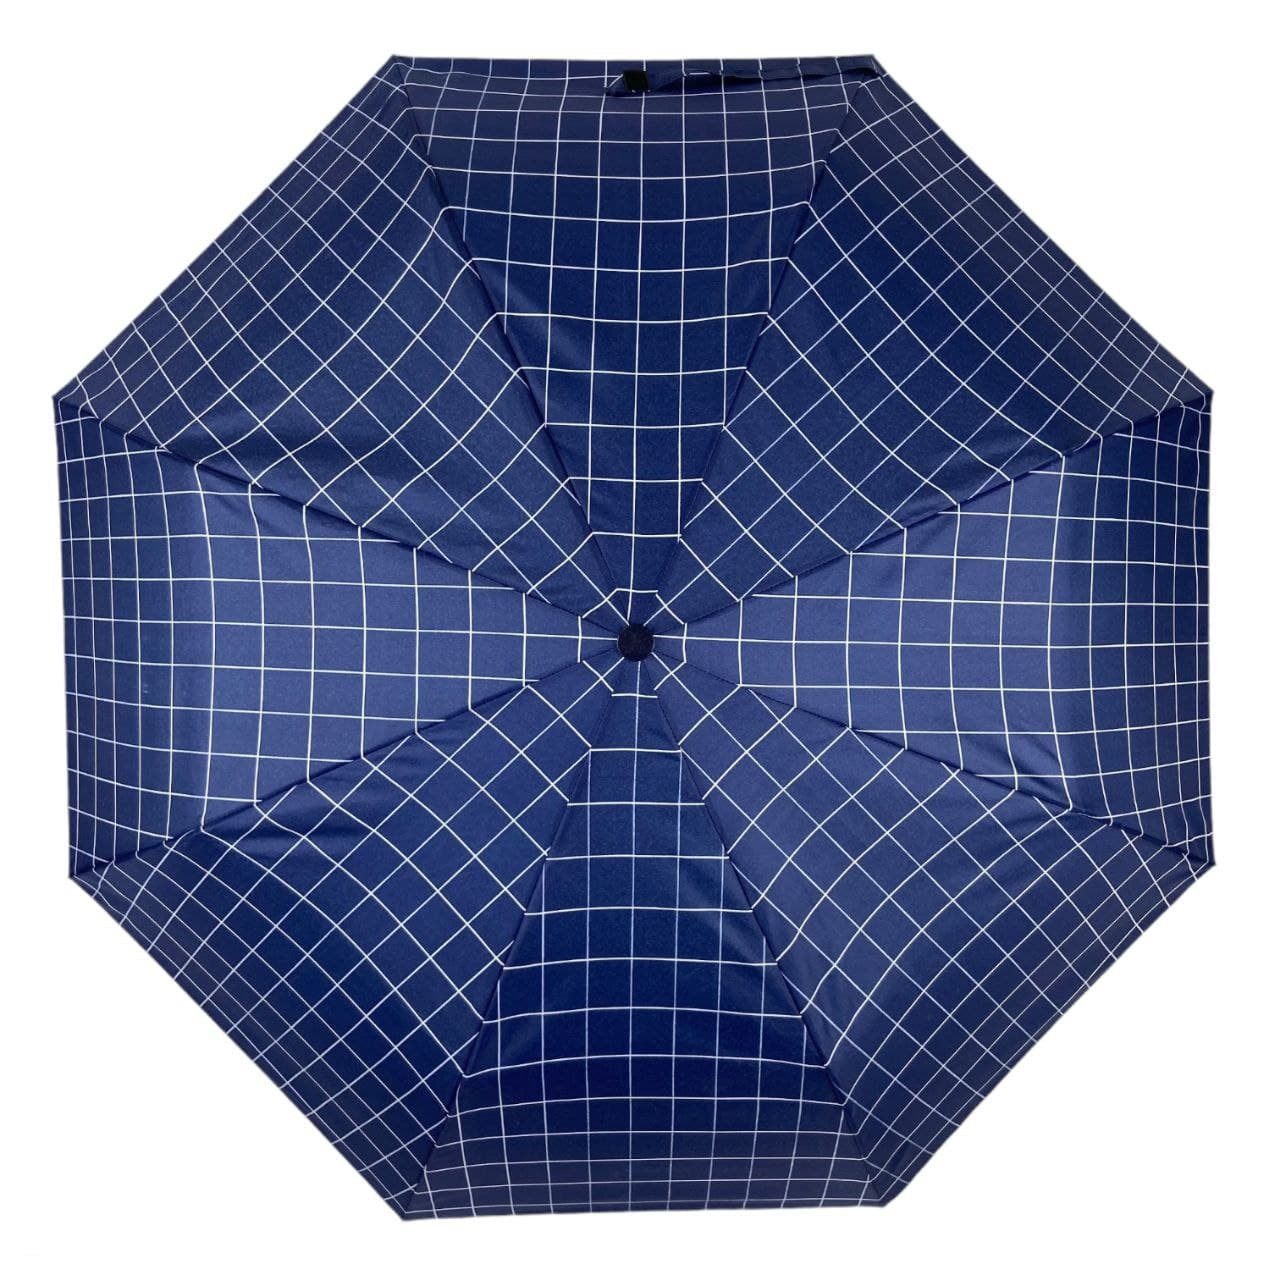 Женский складной зонтик полуавтомат Toprain 97 см синий - фото 2